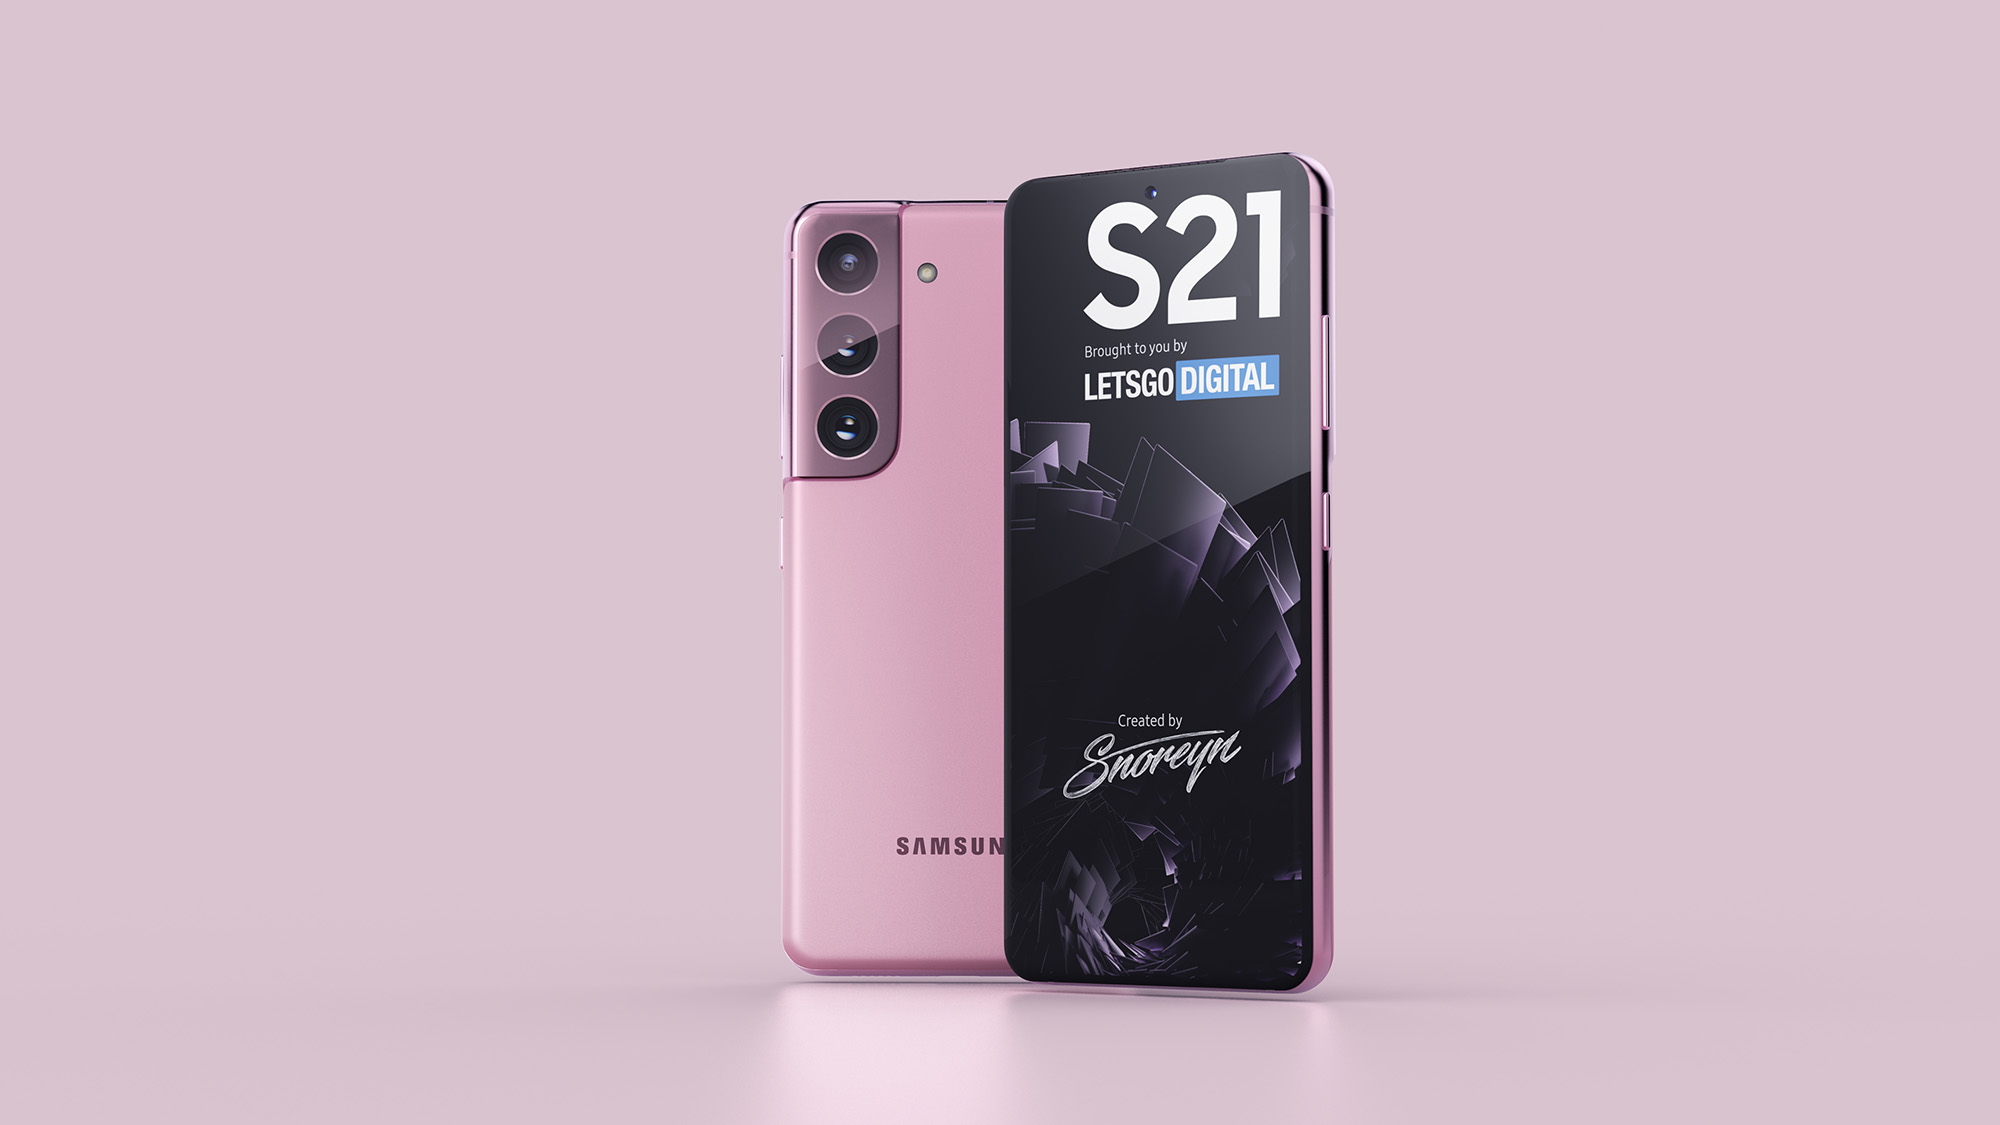 Появились первые качественные изображения новых смартфонов Samsung Galaxy S21, Galaxy S21+ и Galaxy S21 Ultra